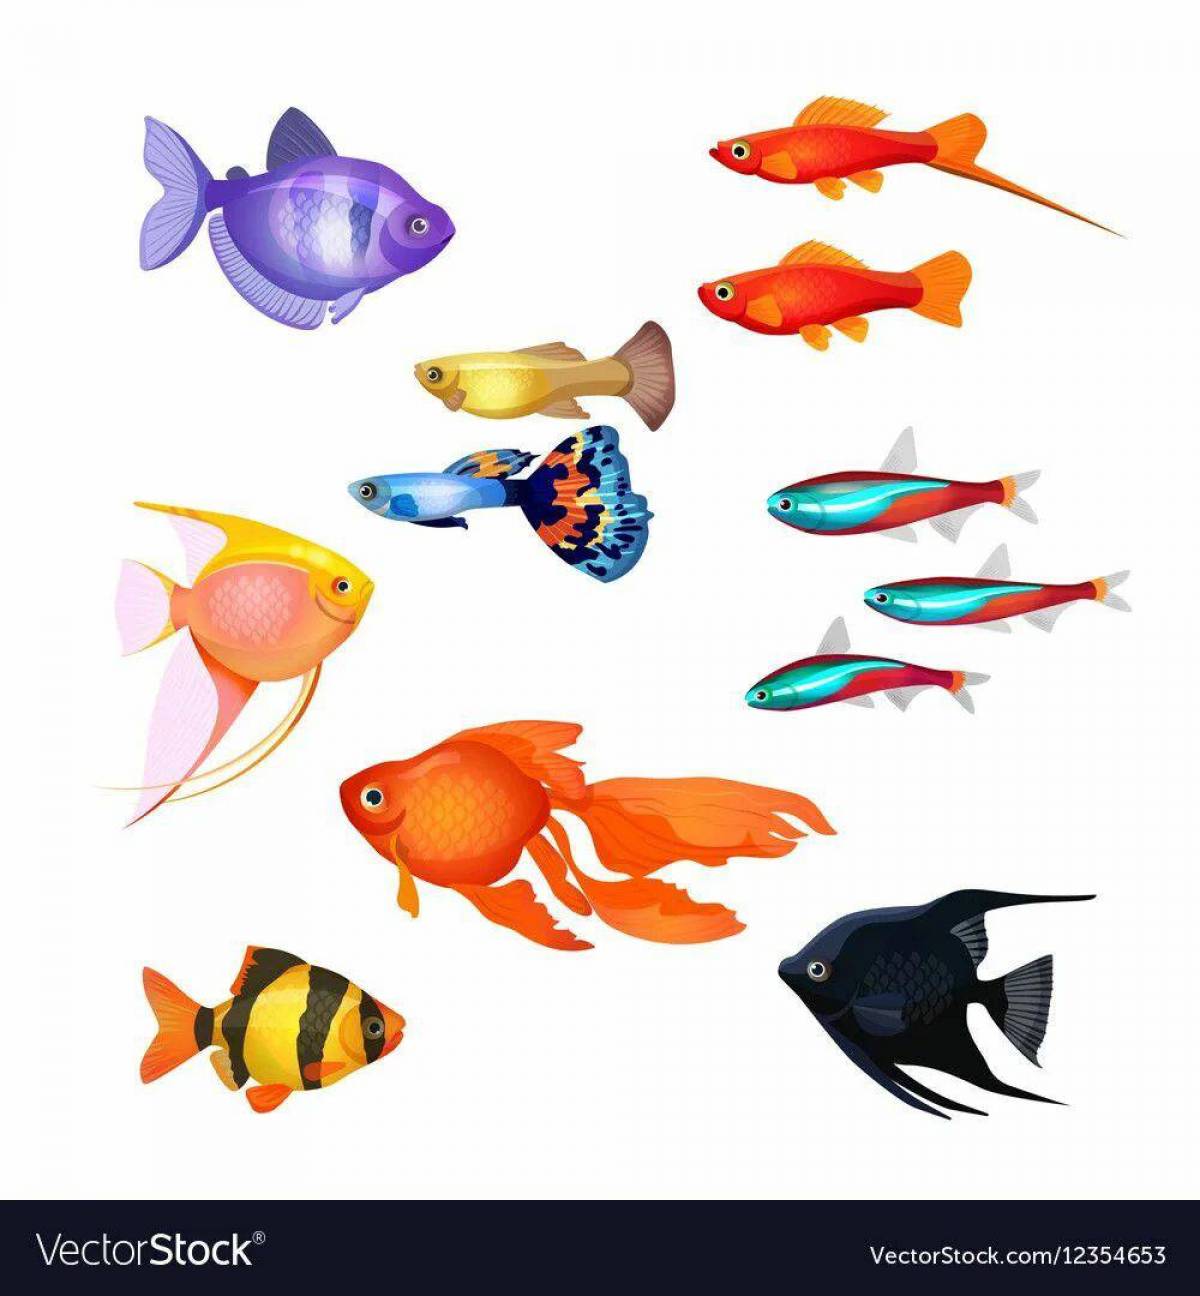 Аквариумные рыбки для детей #6